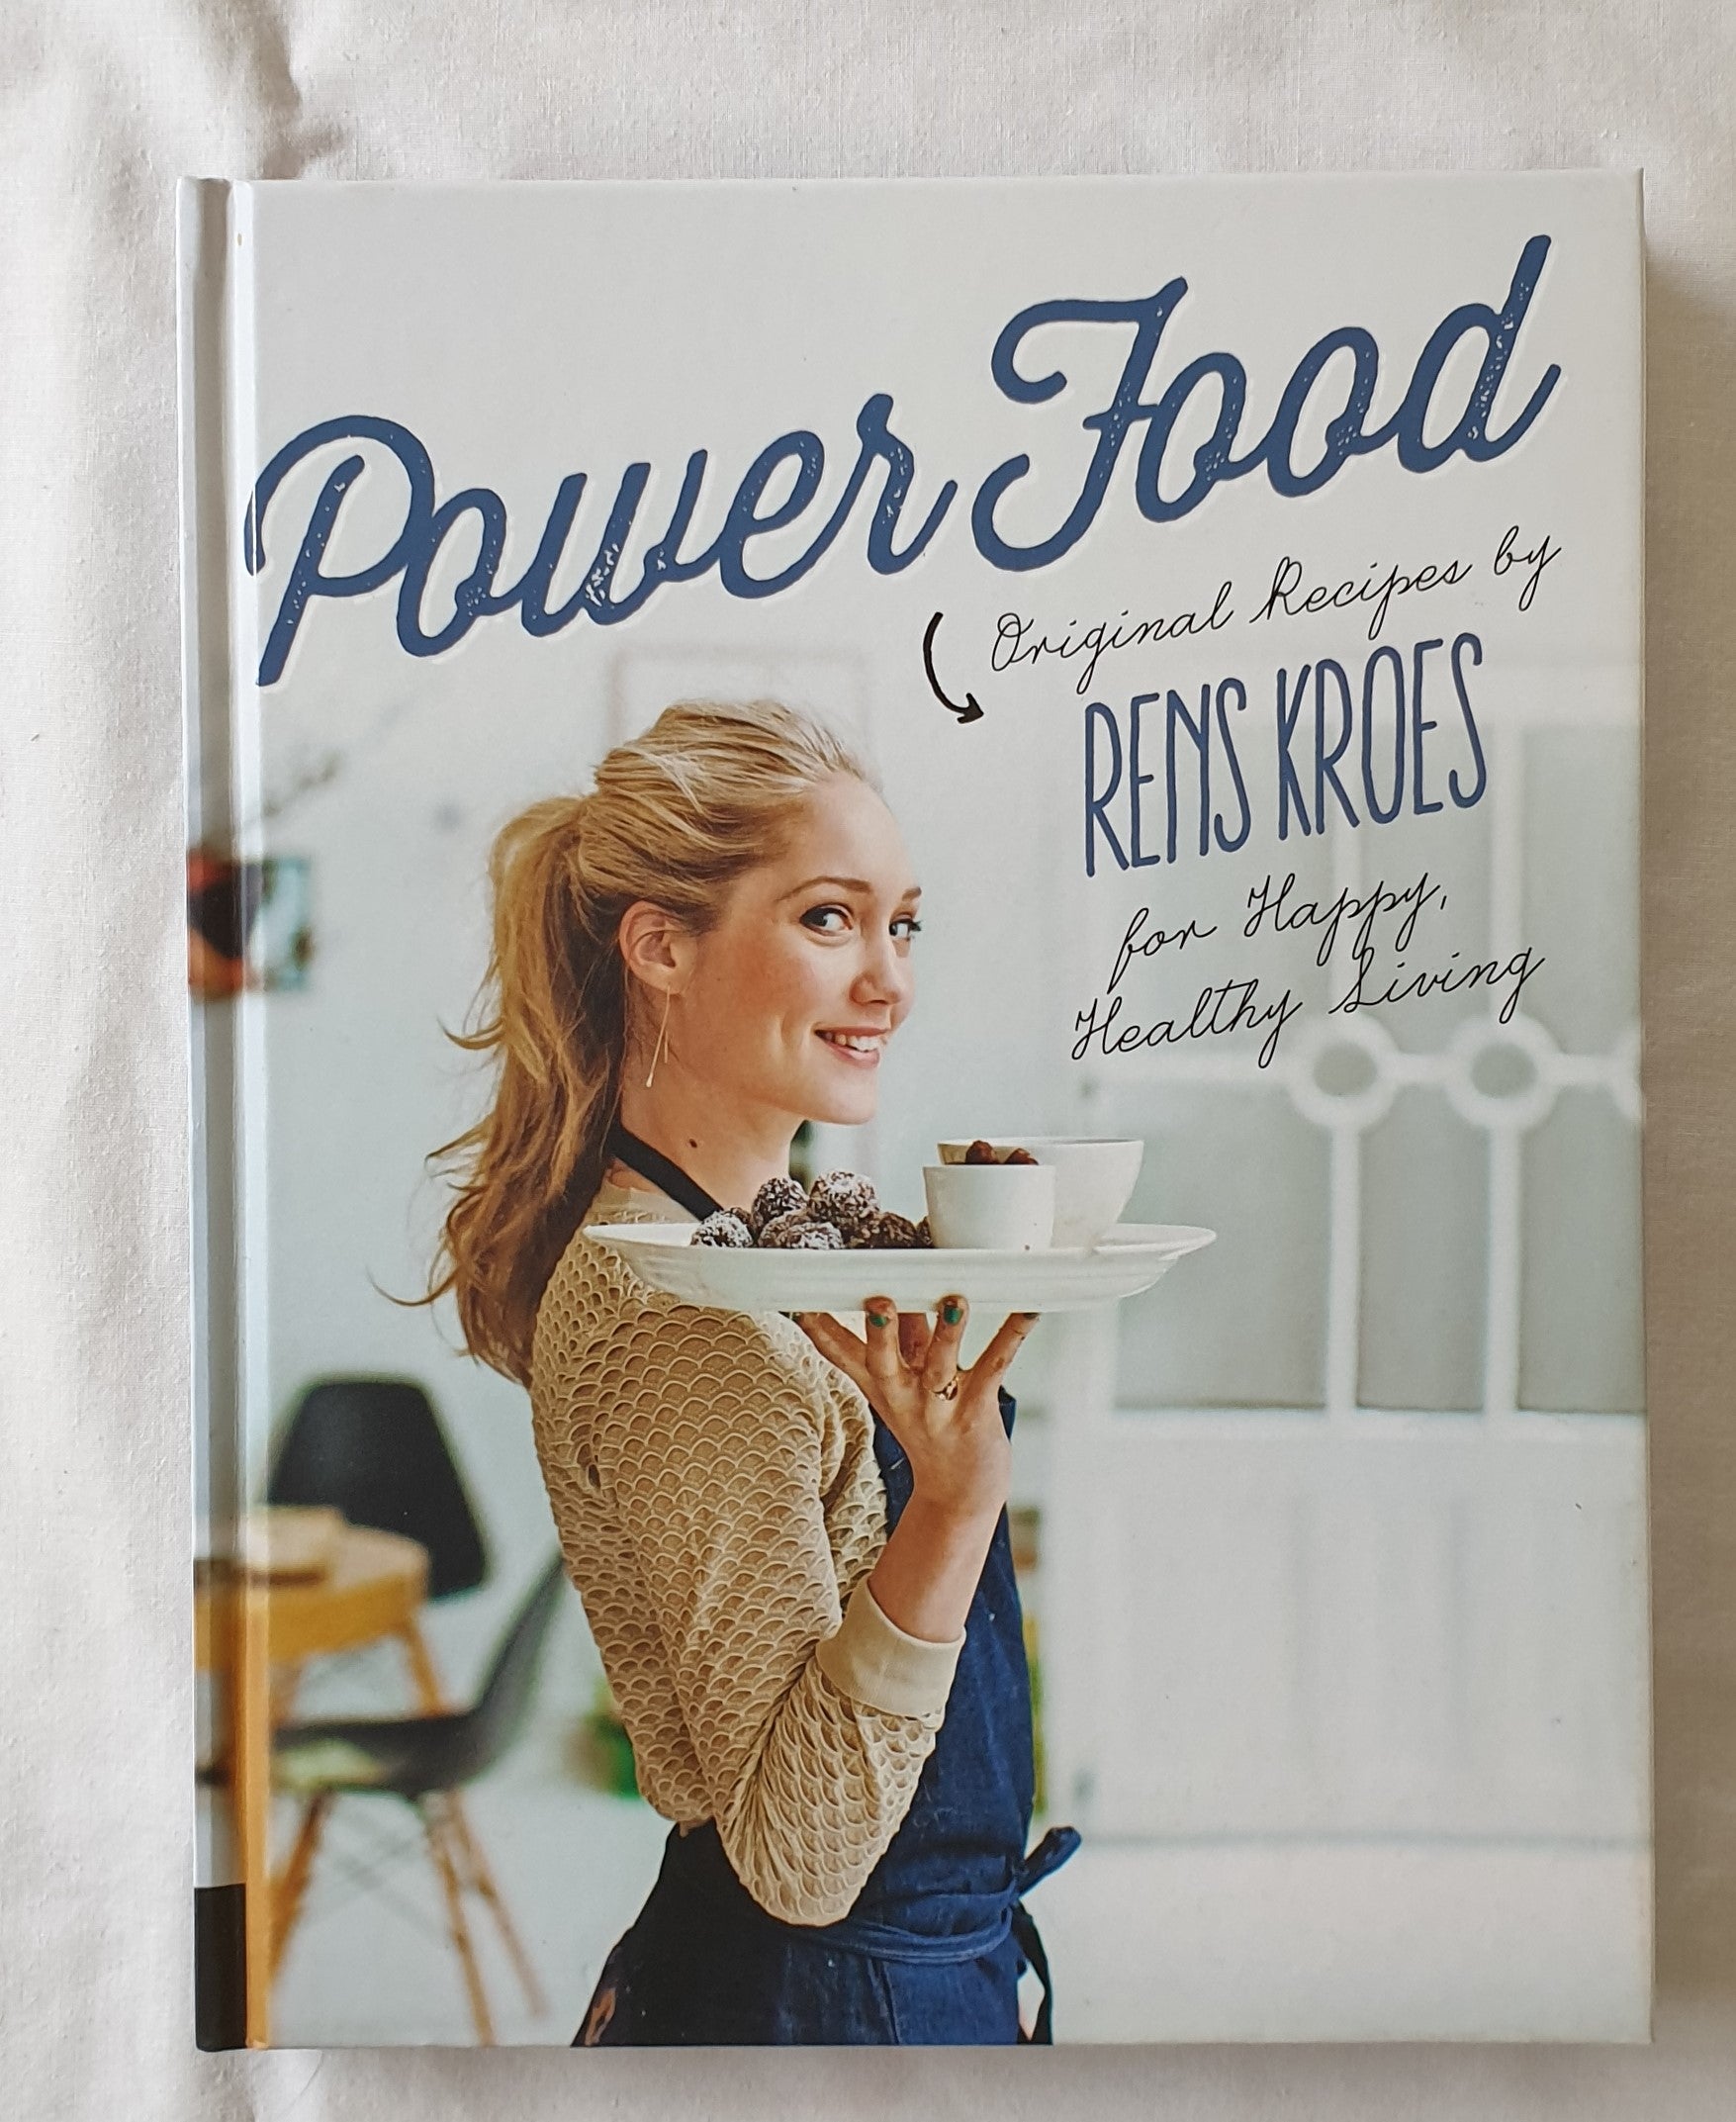 Power Food by Rens Kroes